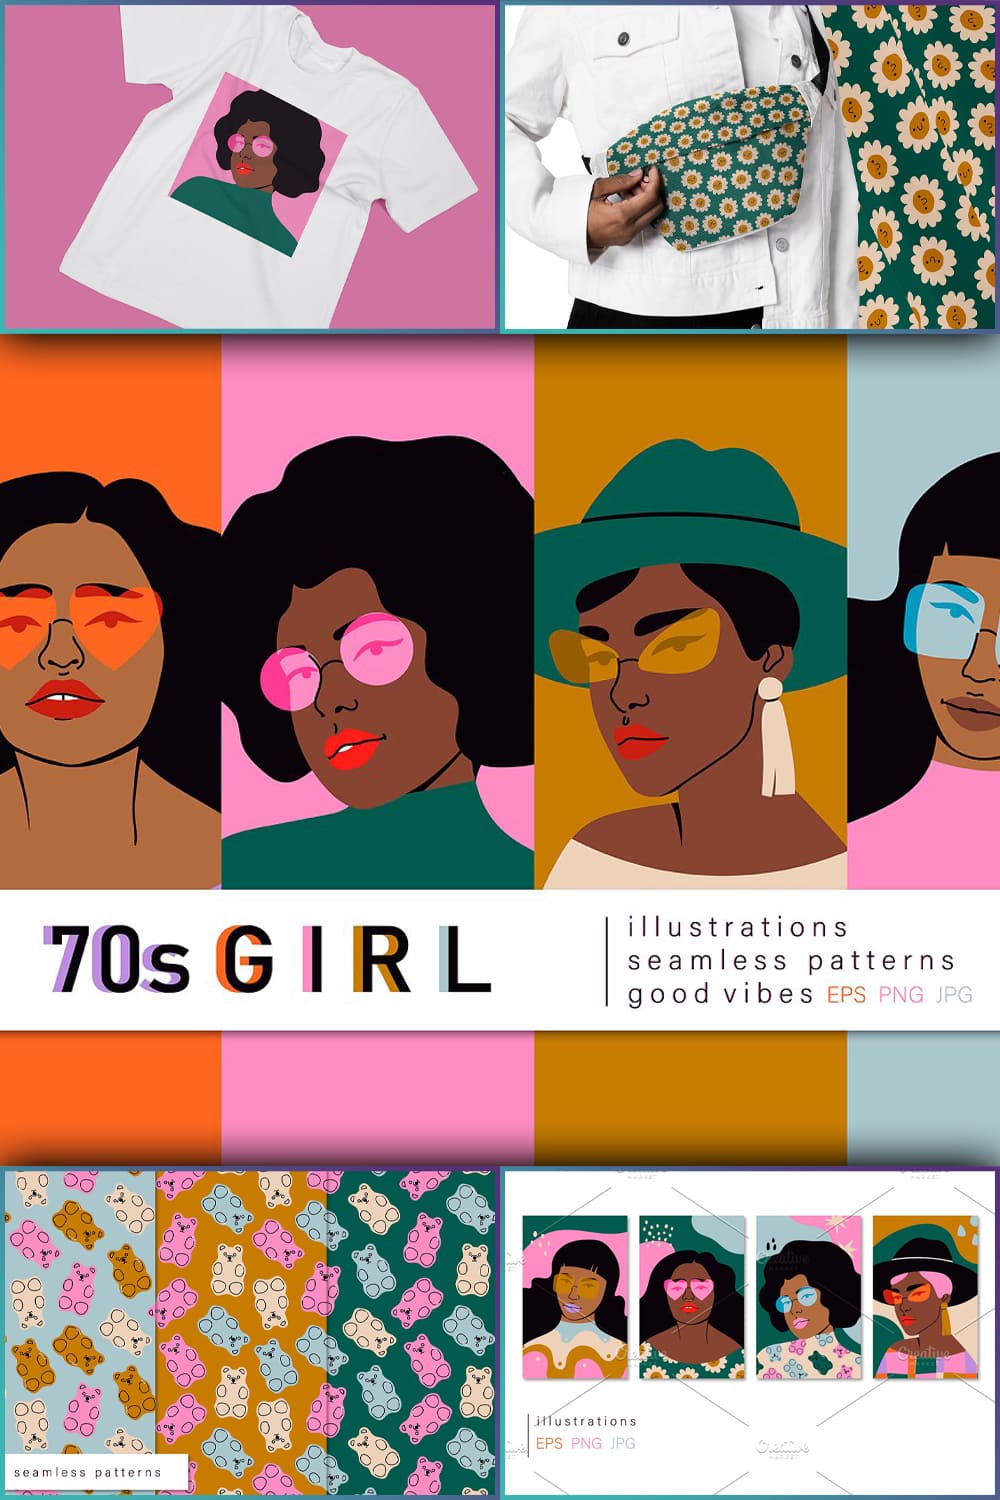 70s Girl - Pinterest.